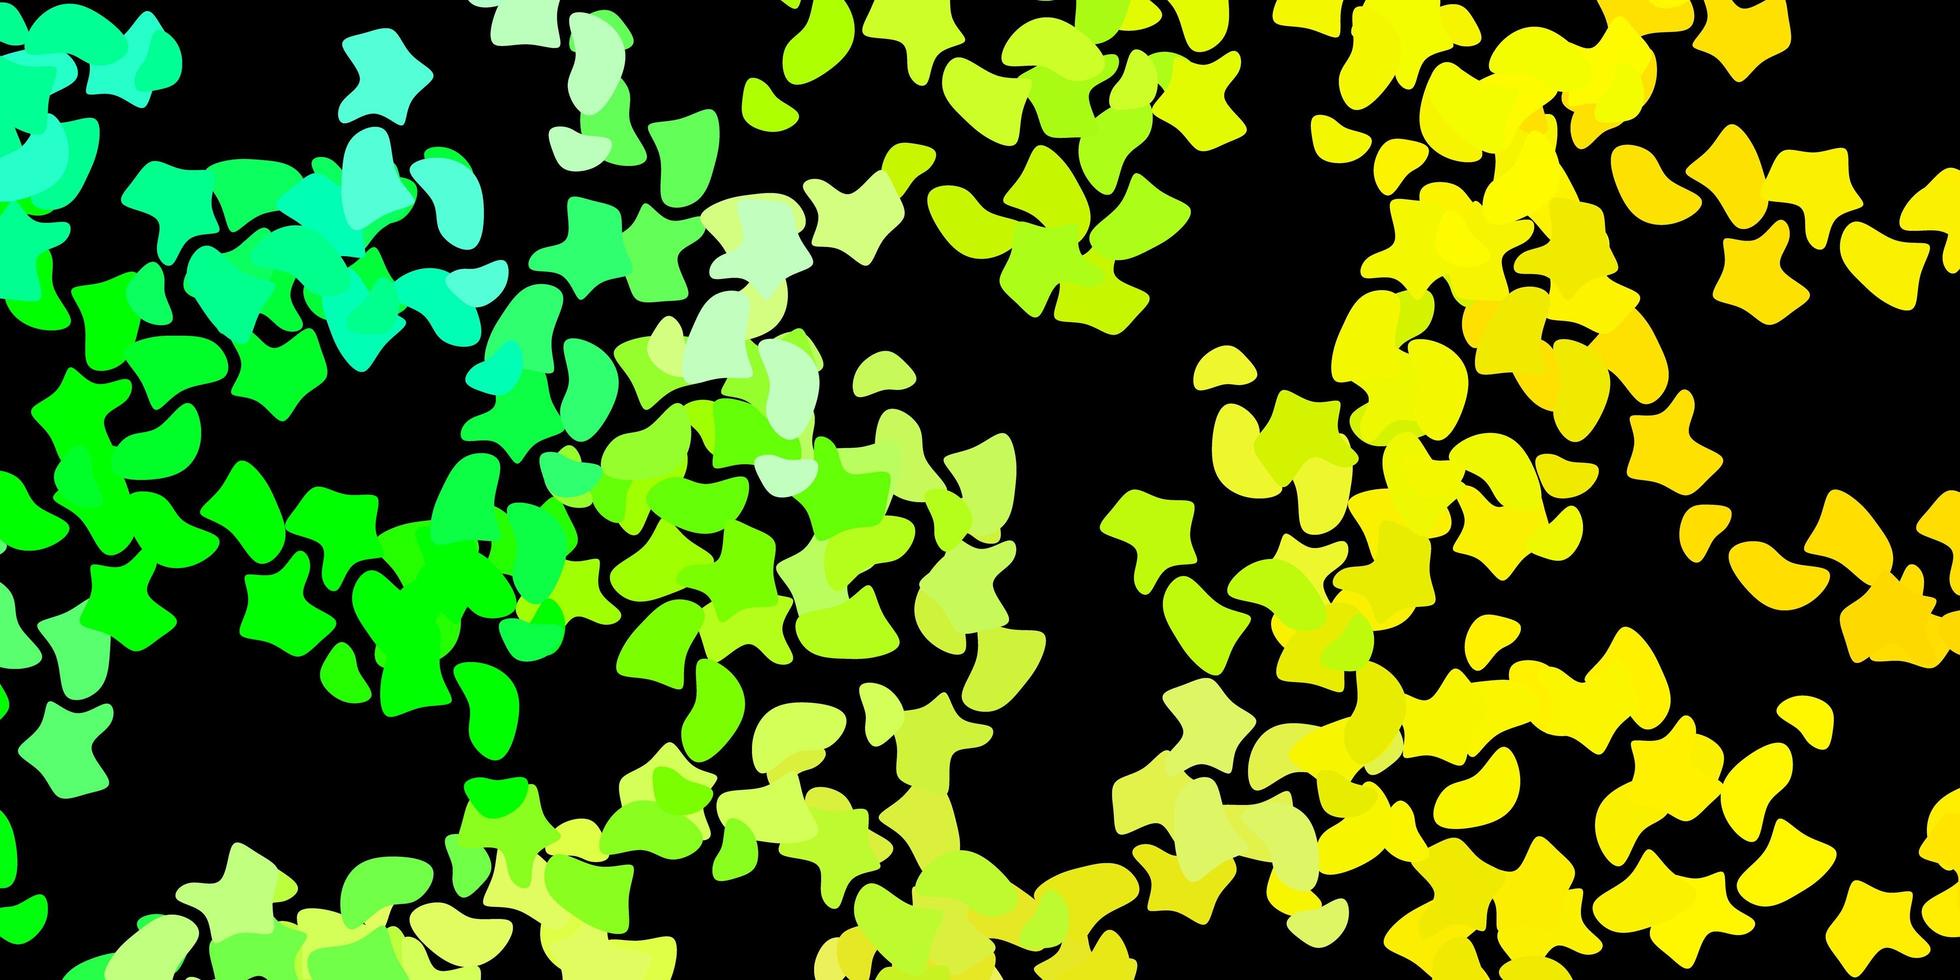 mörkgrön, gul vektorbakgrund med kaotiska former. vektor